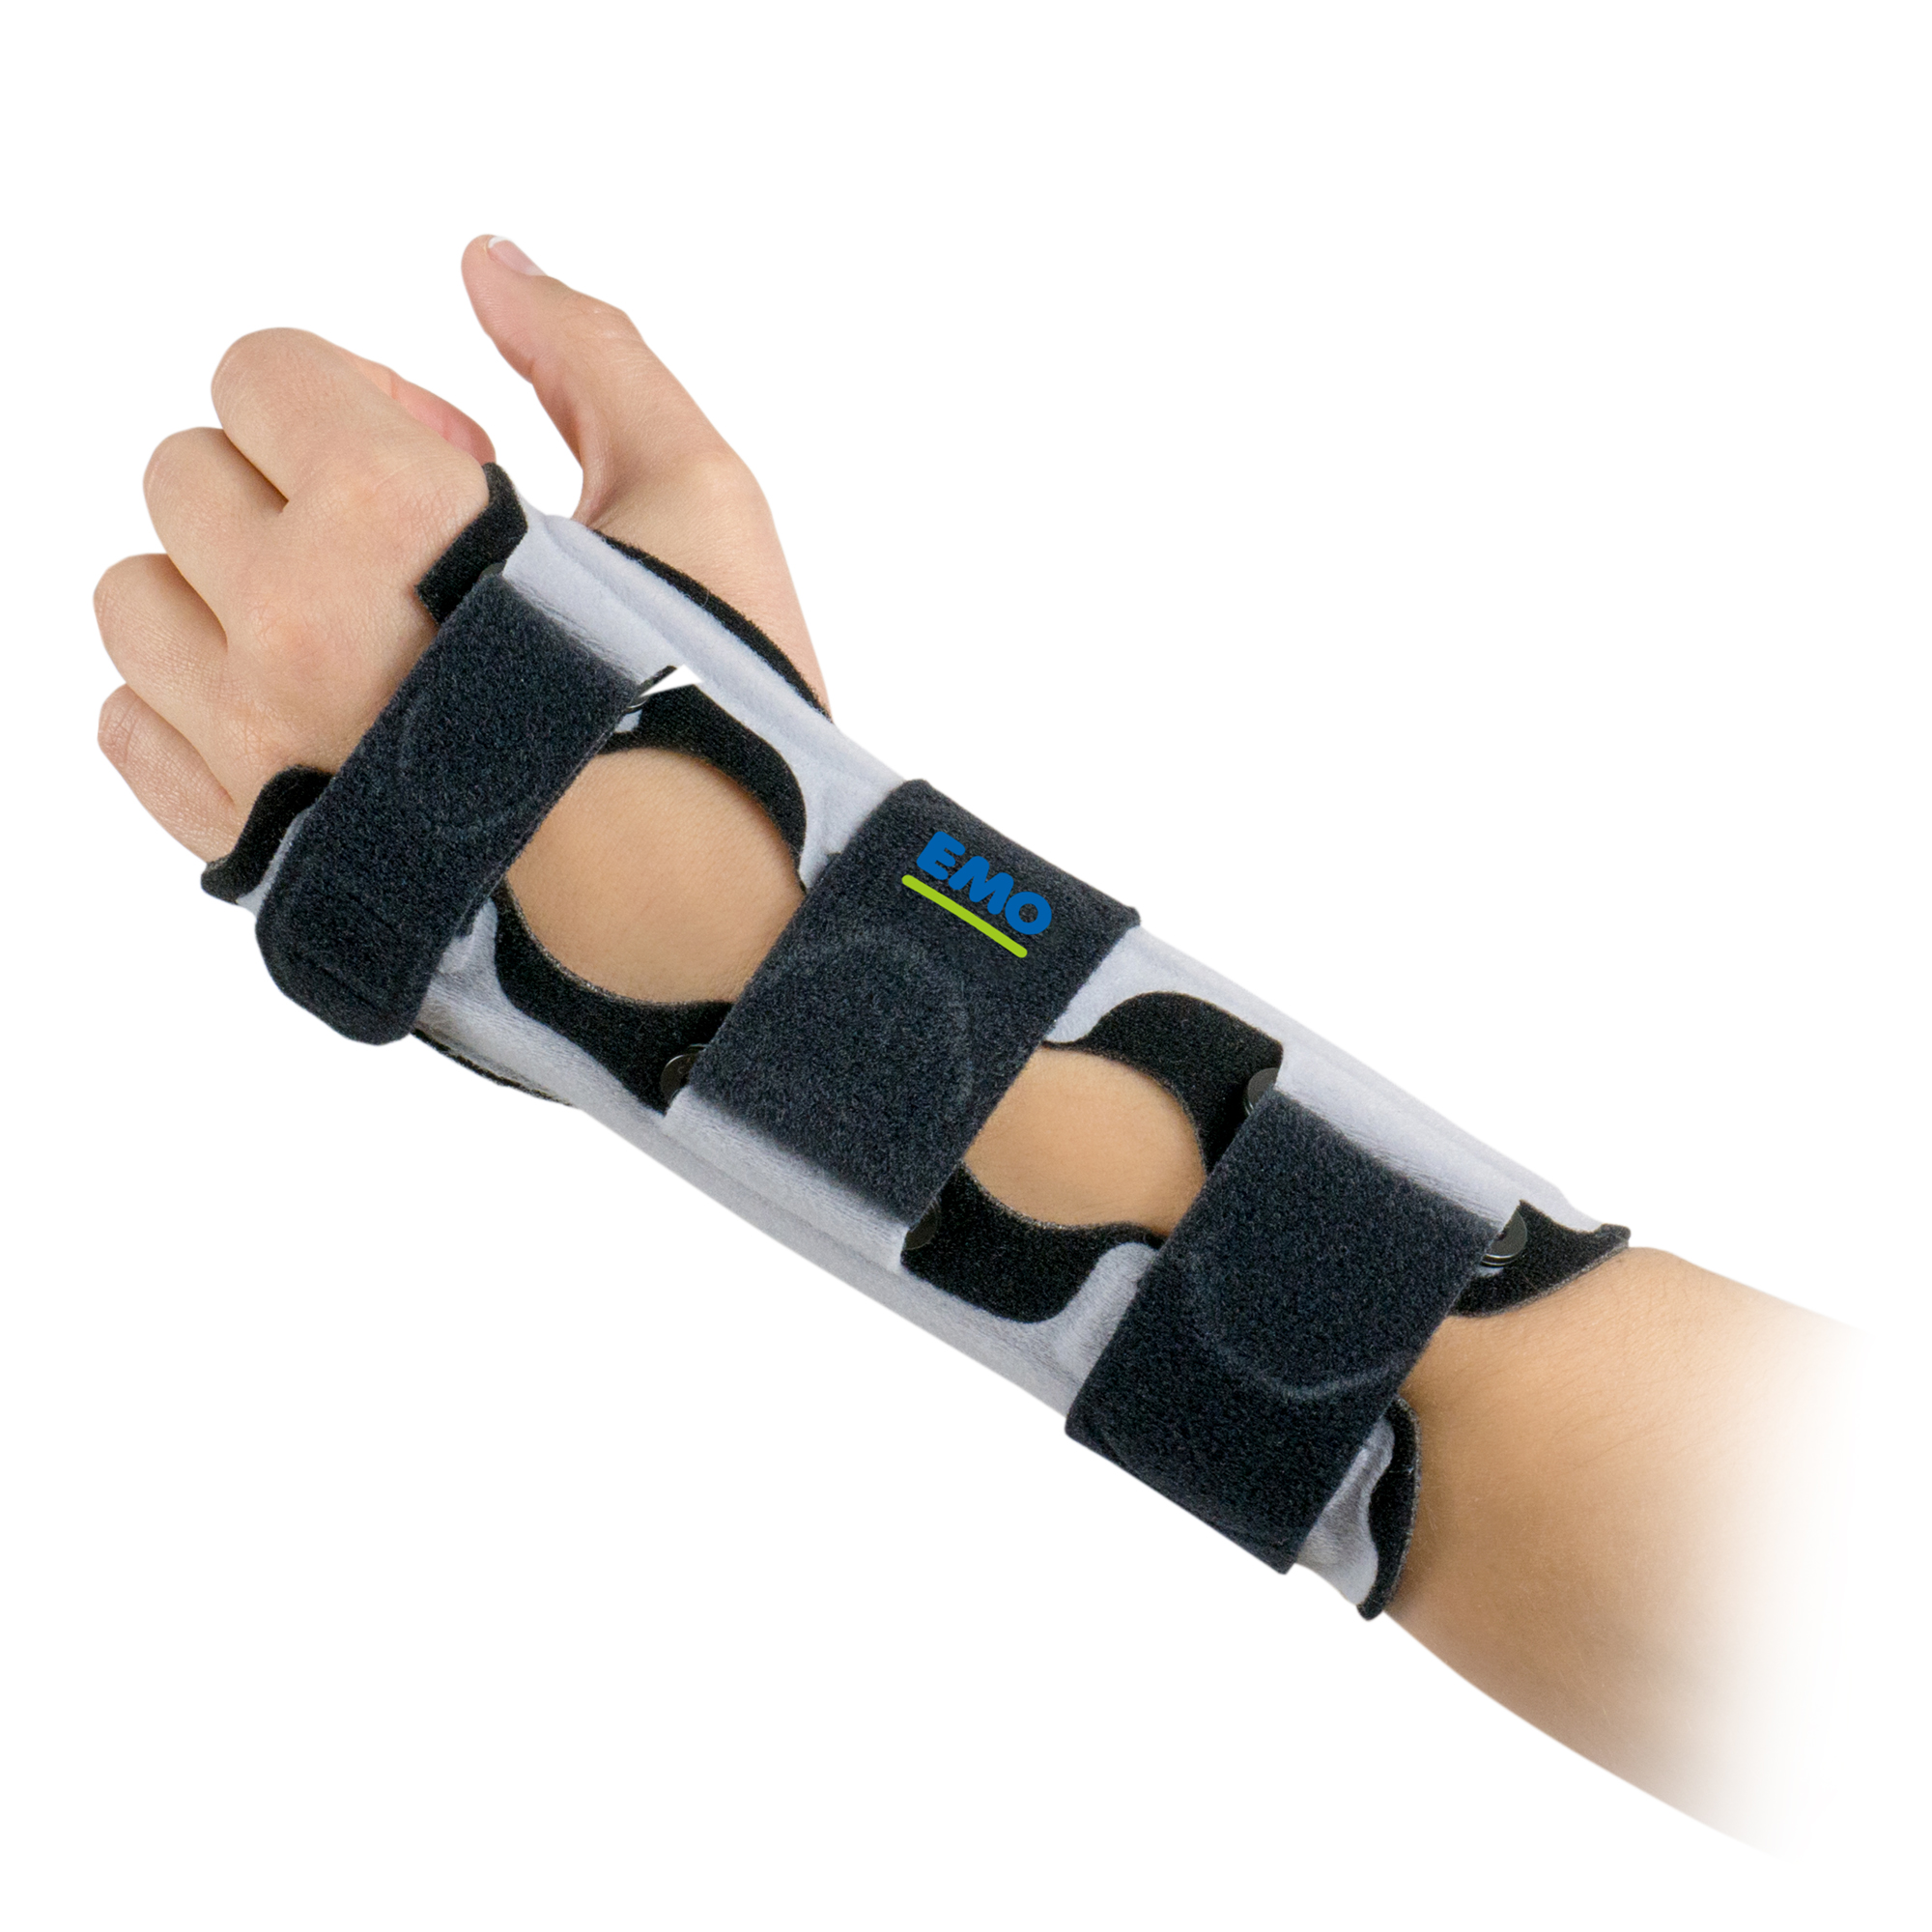 Produktbild EMO Manugrip, Handorthese zur Immobilisierung des Handgelenks